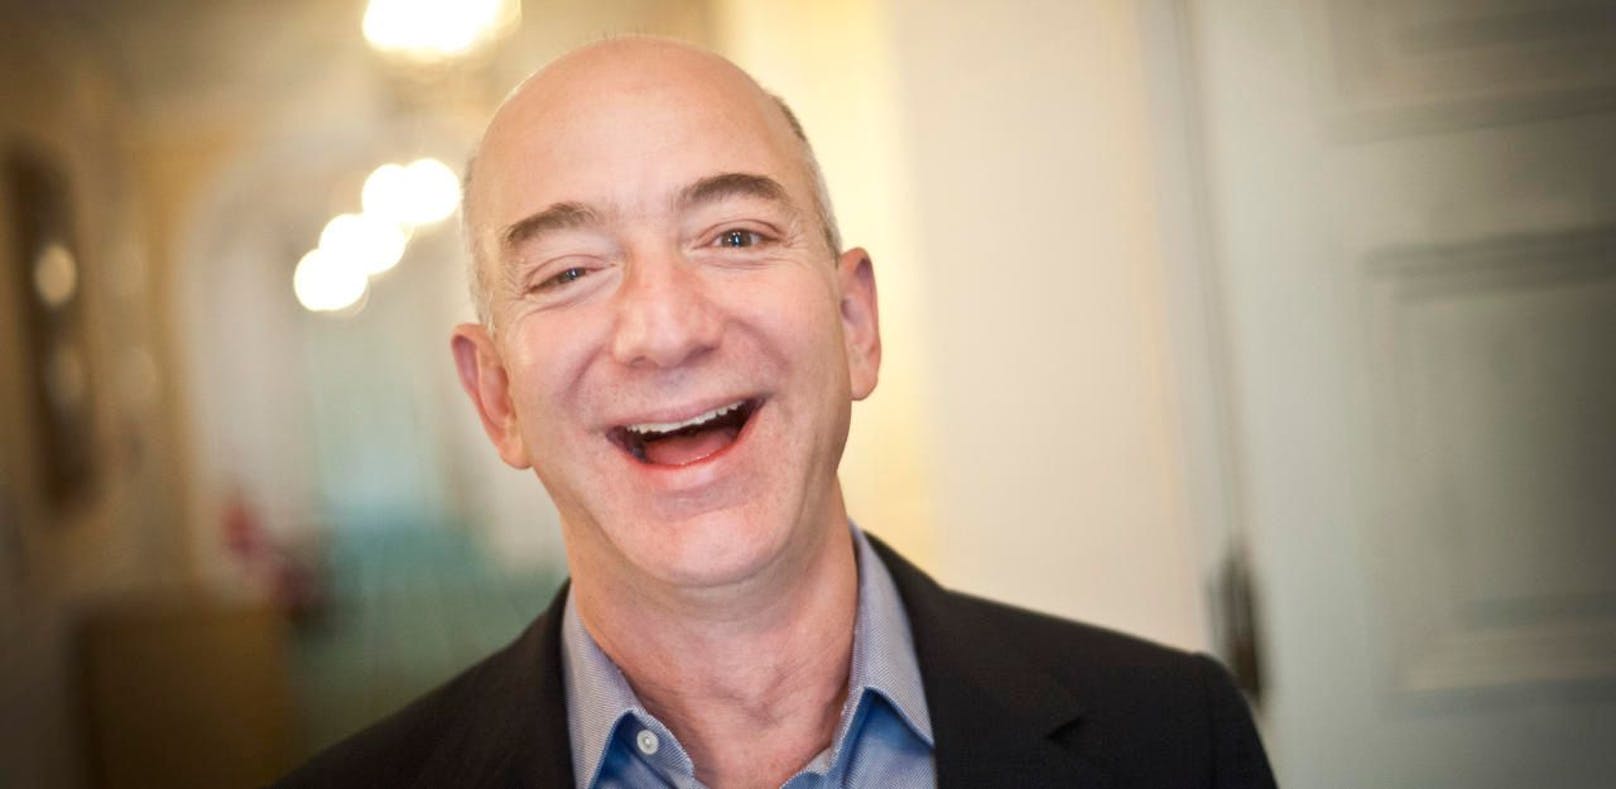 Bezos wurde in wenigen Minuten um 13 Mrd. reicher